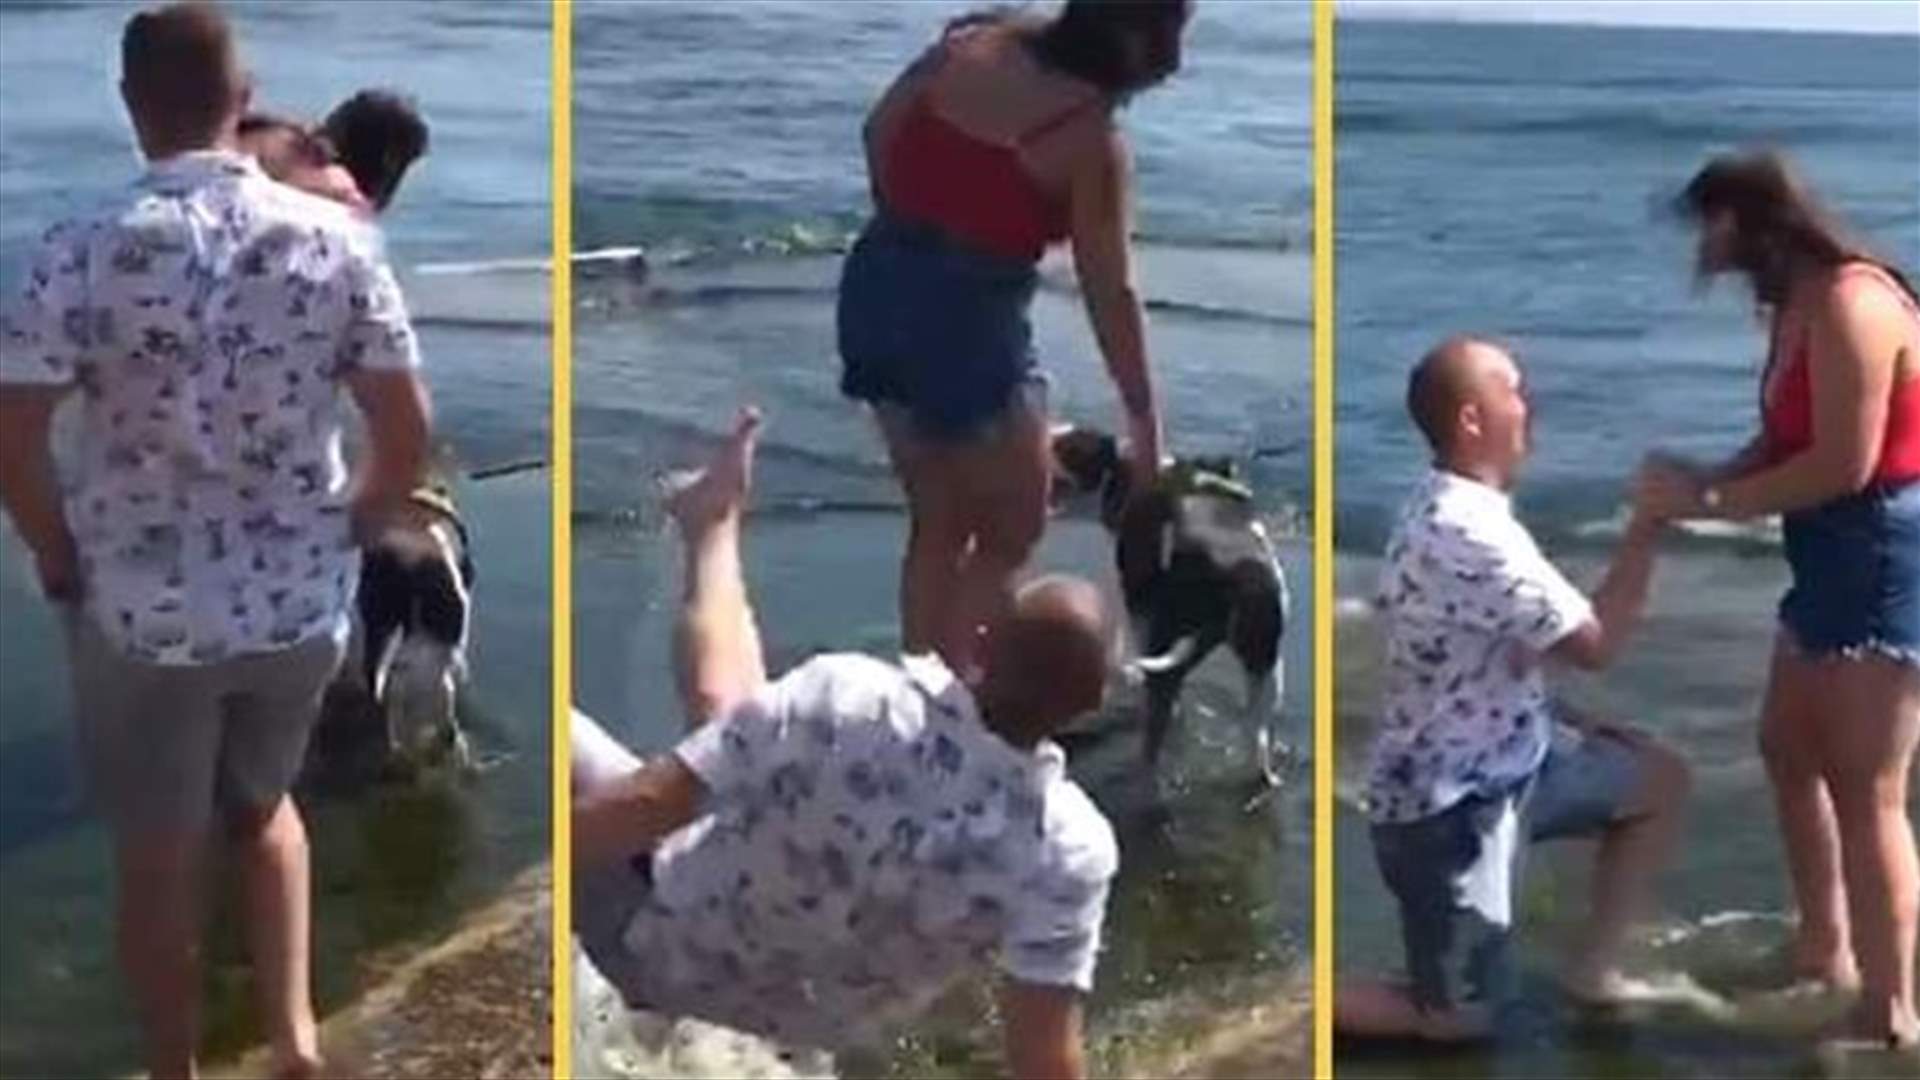 انزلق في البحيرة وهو يطلب يد حبيبته... عرض زواج يتحوّل إلى أجواءٍ كوميدية (فيديو)